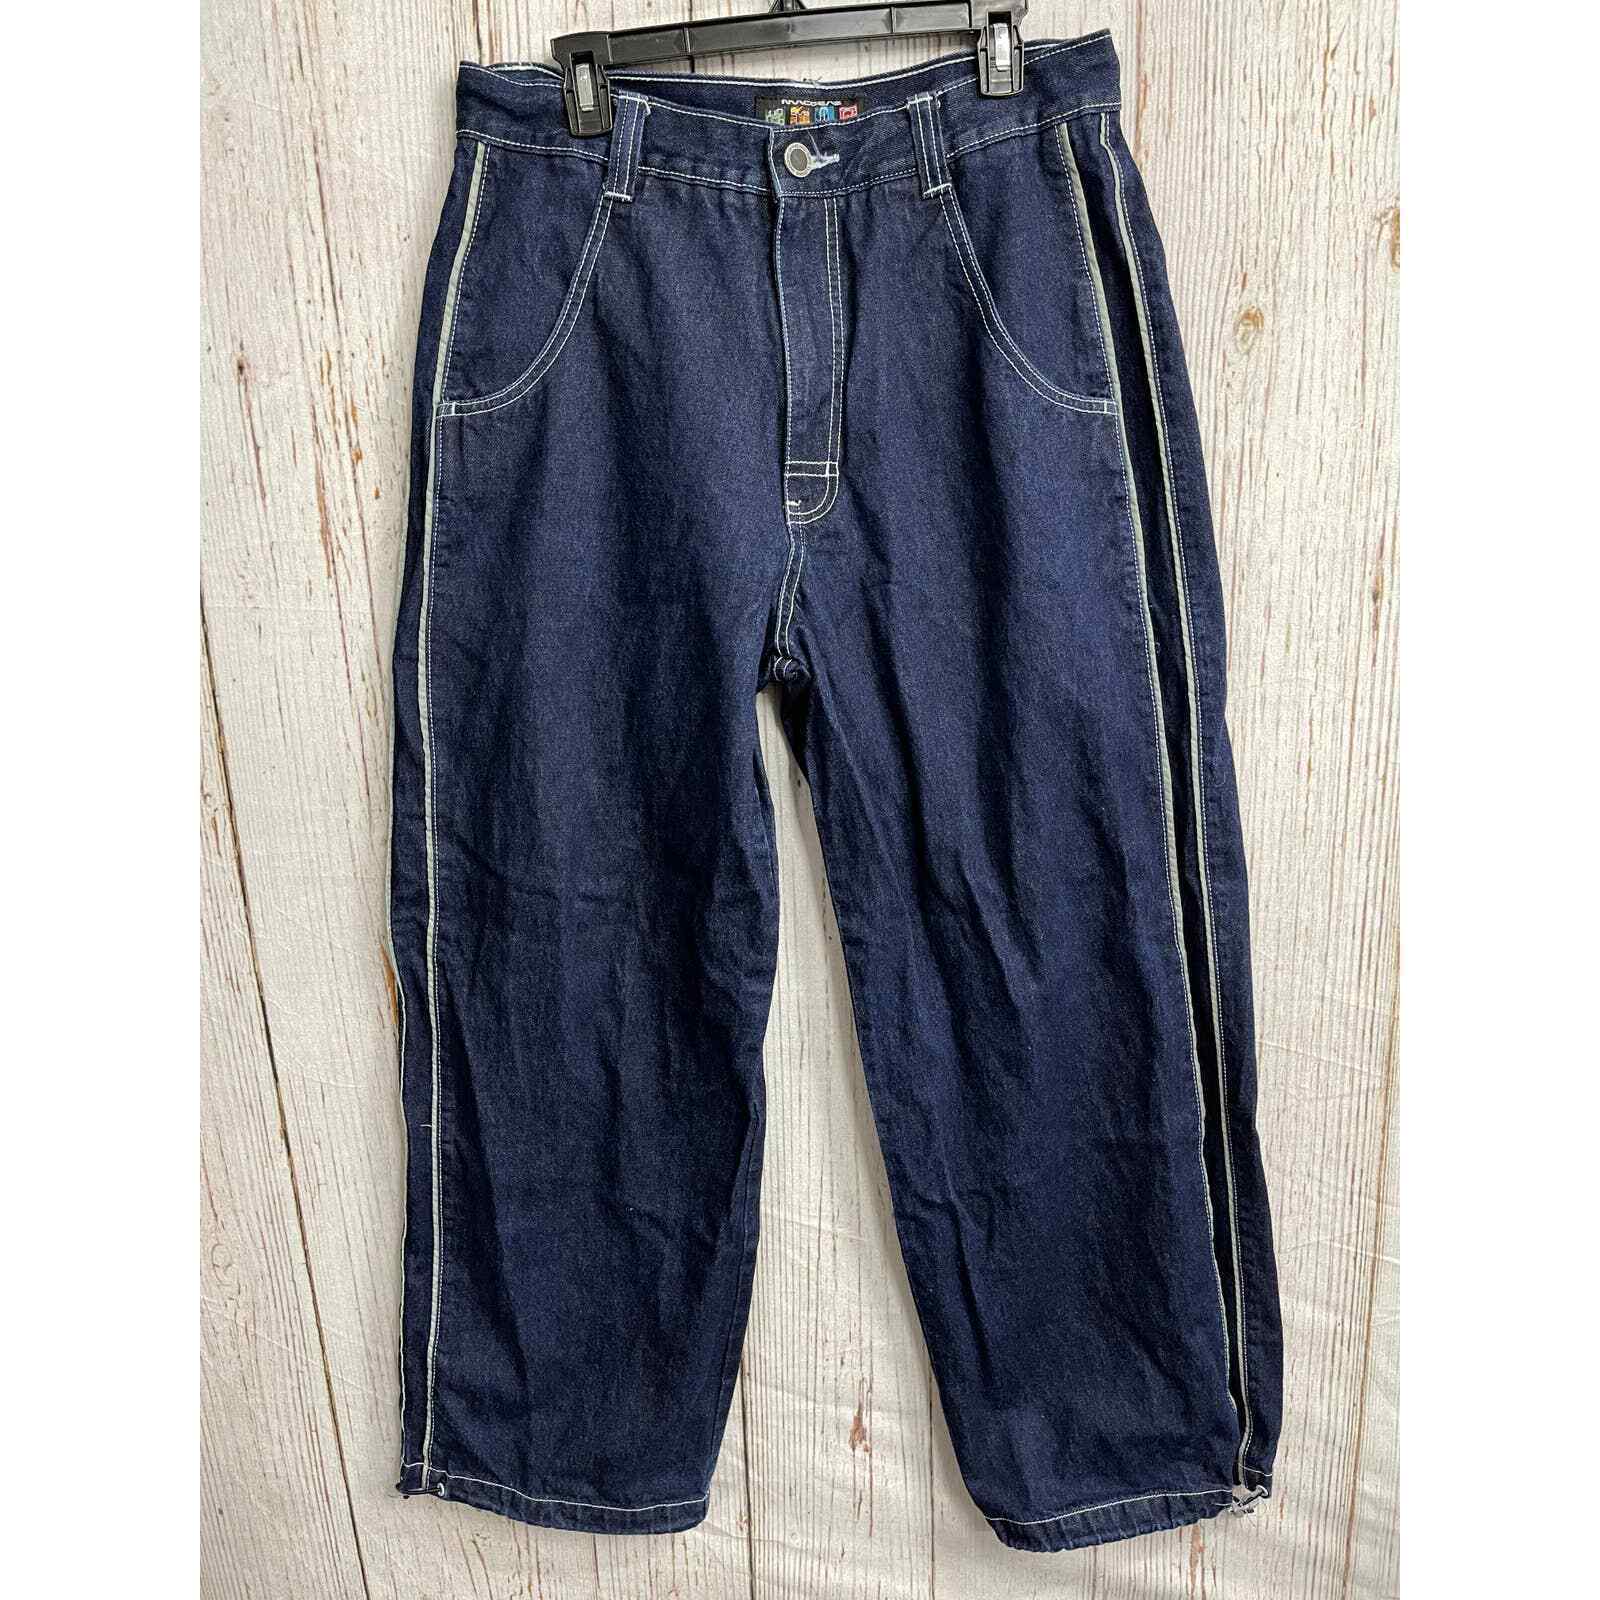 正規品の通販 ★【90-00s Sideline jeans】 buggy デニム/ジーンズ